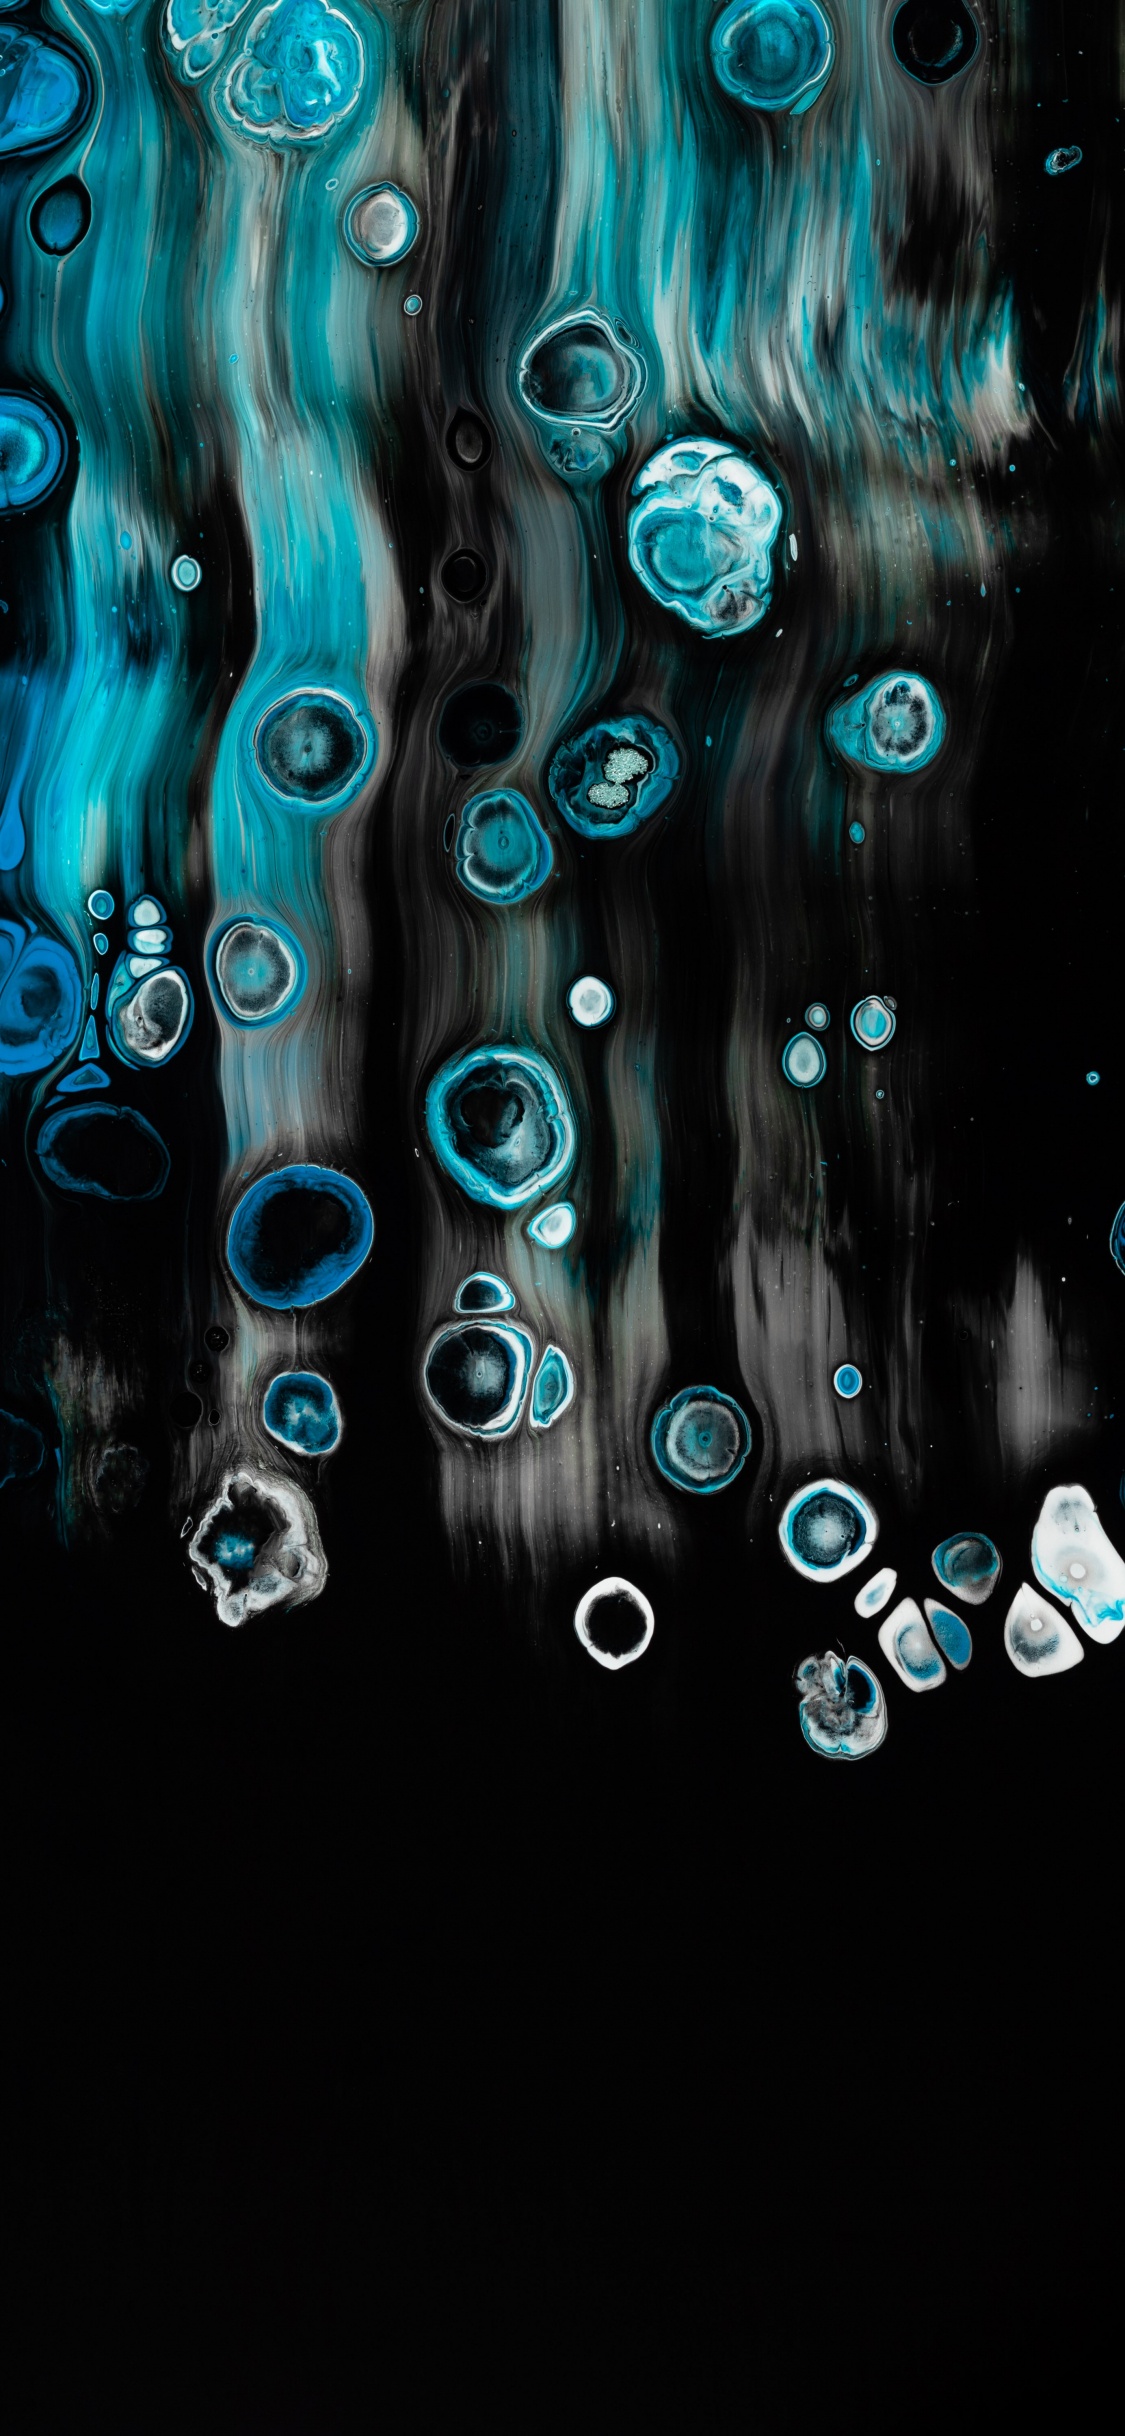 Papel Tapiz Digital de Luz Azul y Blanca. Wallpaper in 1125x2436 Resolution